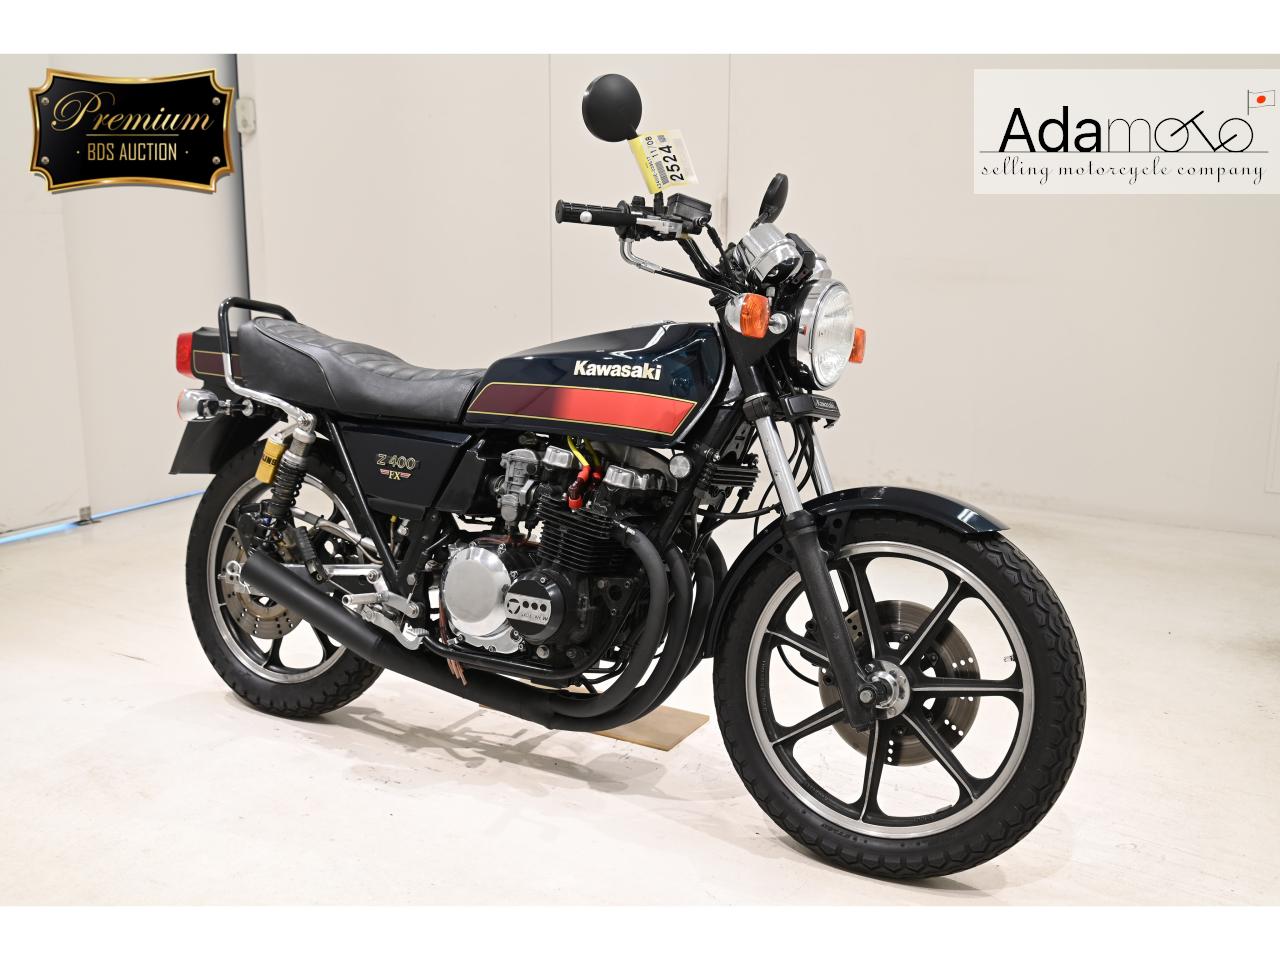 Kawasaki Z400FX - Adamoto - Motorcycles from Japan